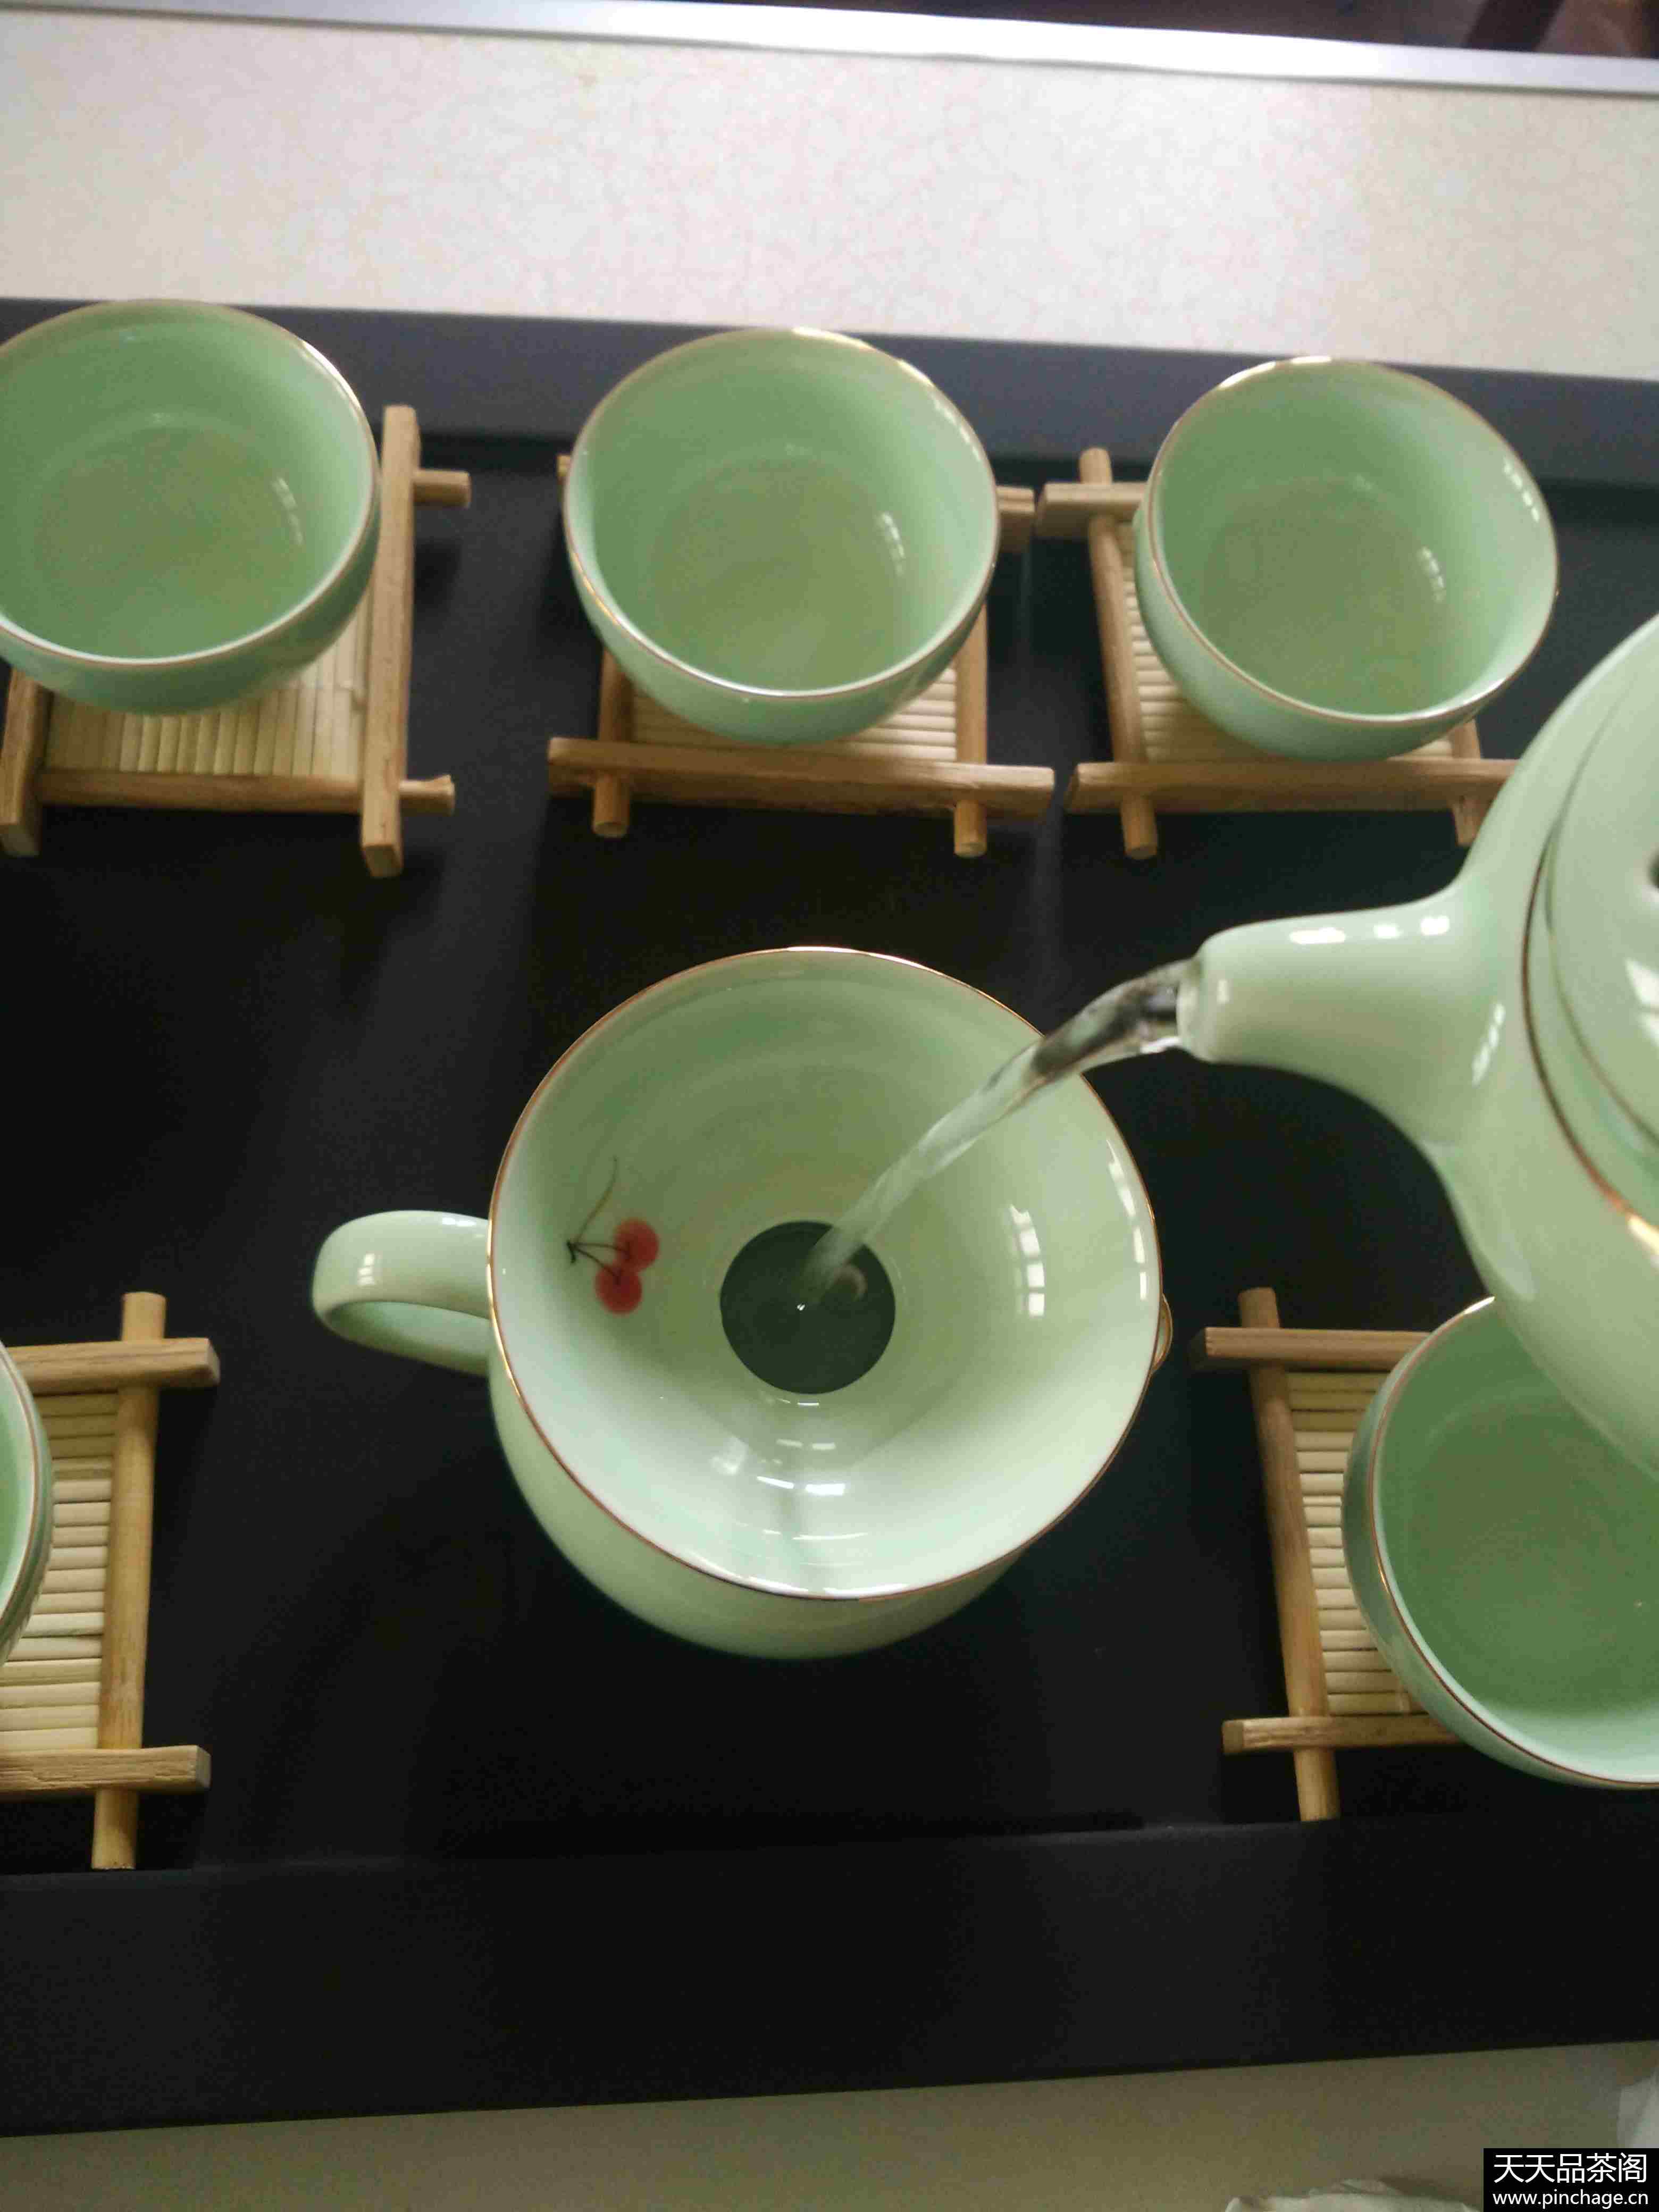 手绘青瓷茶具